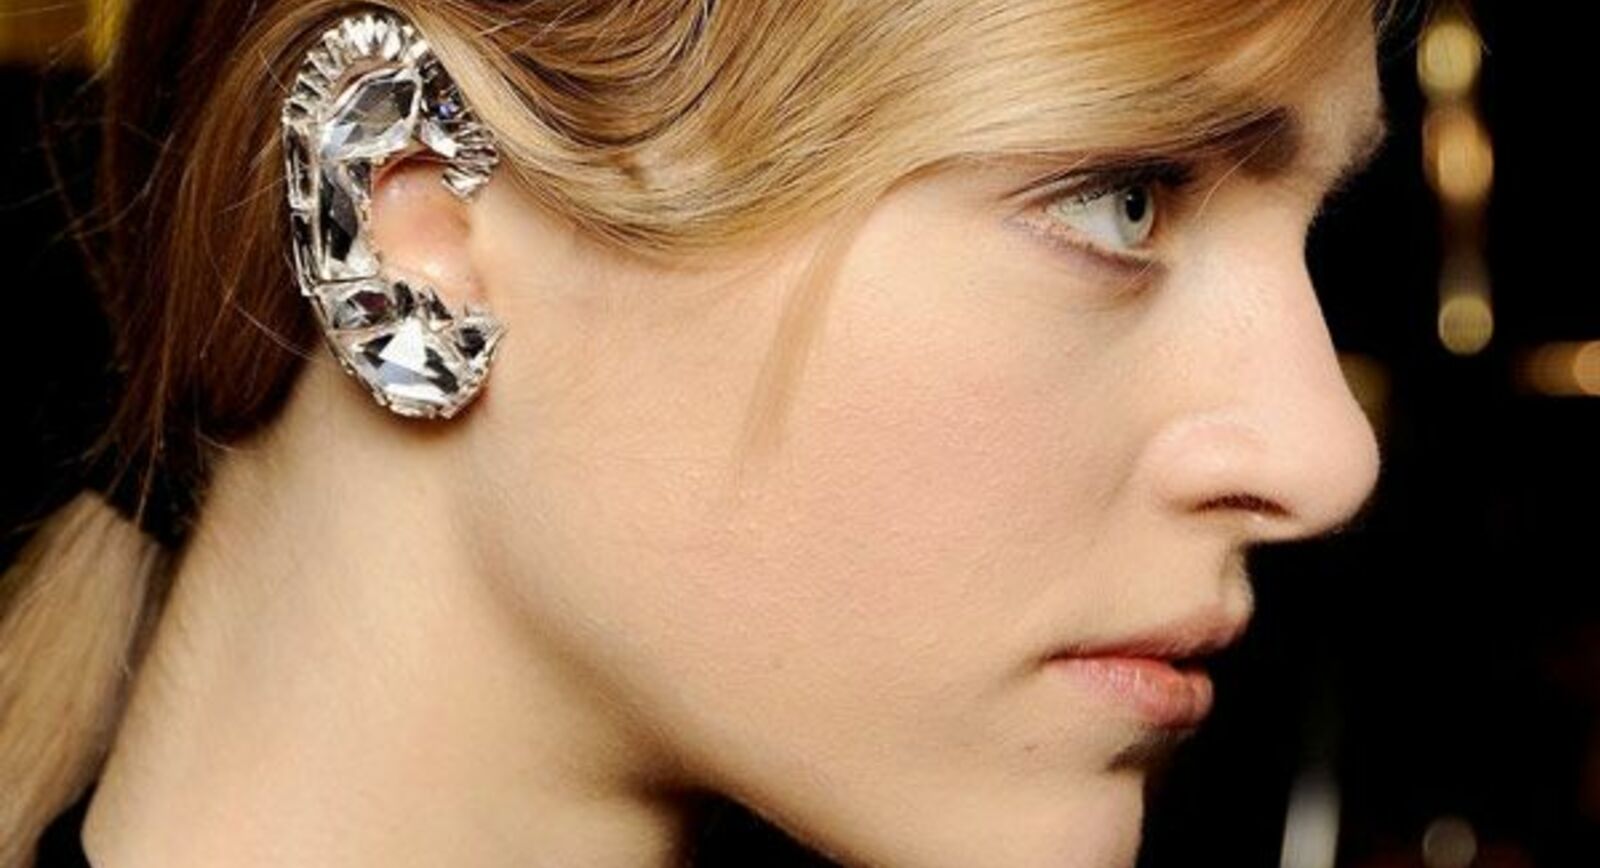 Ear Cuffs Trend Makes a Comeback